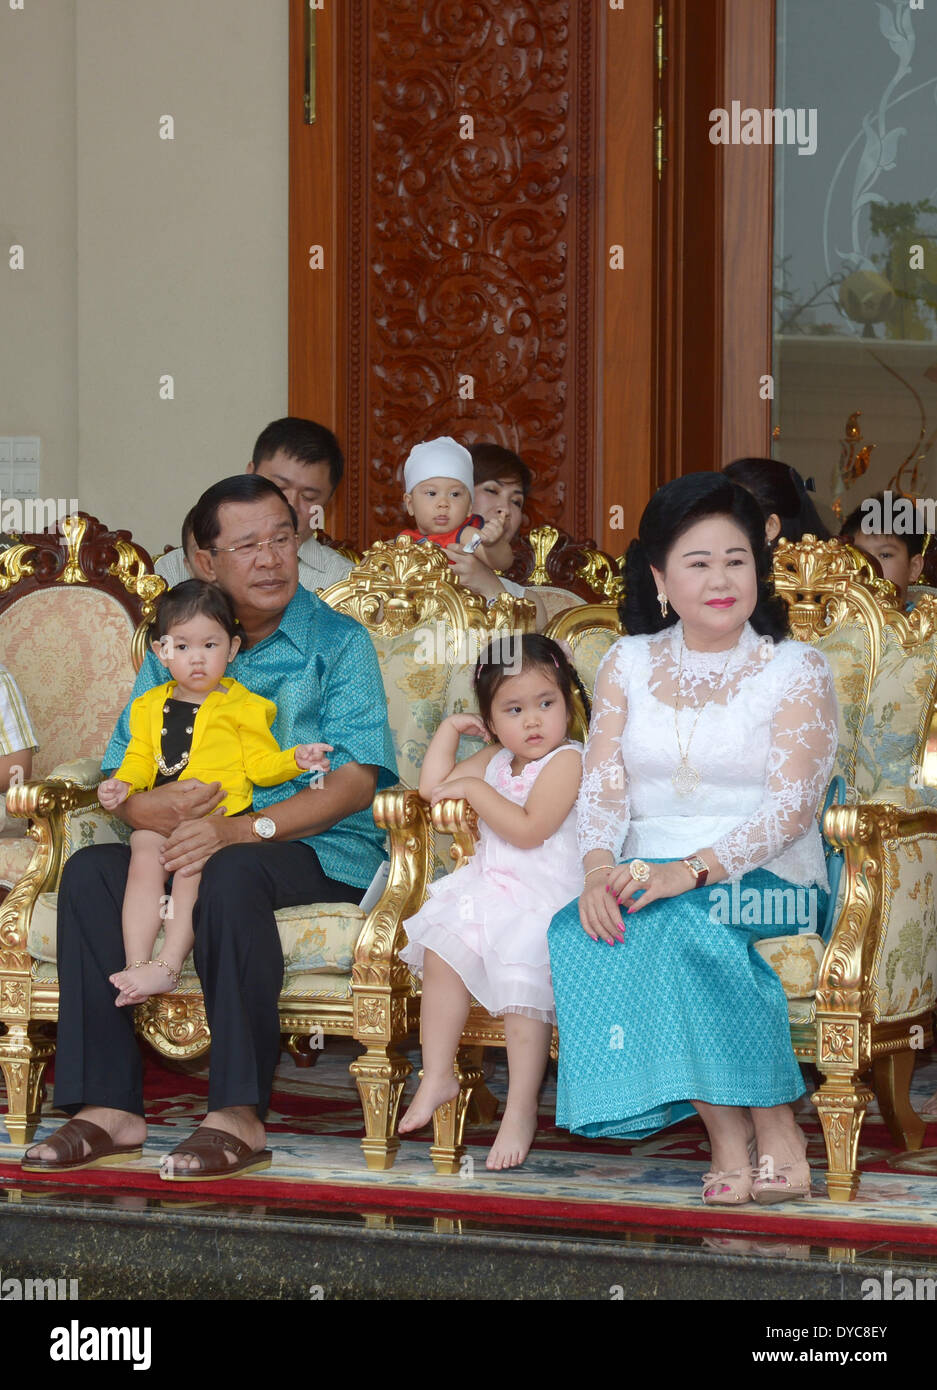 Phnom Penh, Cambodge. 14 avr, 2014. Le Premier ministre cambodgien Hun Sen (L) et son épouse Bun Rany (R) s'asseoir avec leurs petits-enfants pendant la fête du Nouvel An khmer à leur domicile à Phnom Penh, Cambodge, 14 avril 2014. Cambodge le lundi a organisé une cérémonie en face de l'élément central du temple d'Angkor Wat, un site du patrimoine mondial, dans la province de Siem Reap pour saluer le Sangkranta ou festival du Nouvel An khmer. Credit : Sovannara/Xinhua/Alamy Live News Banque D'Images